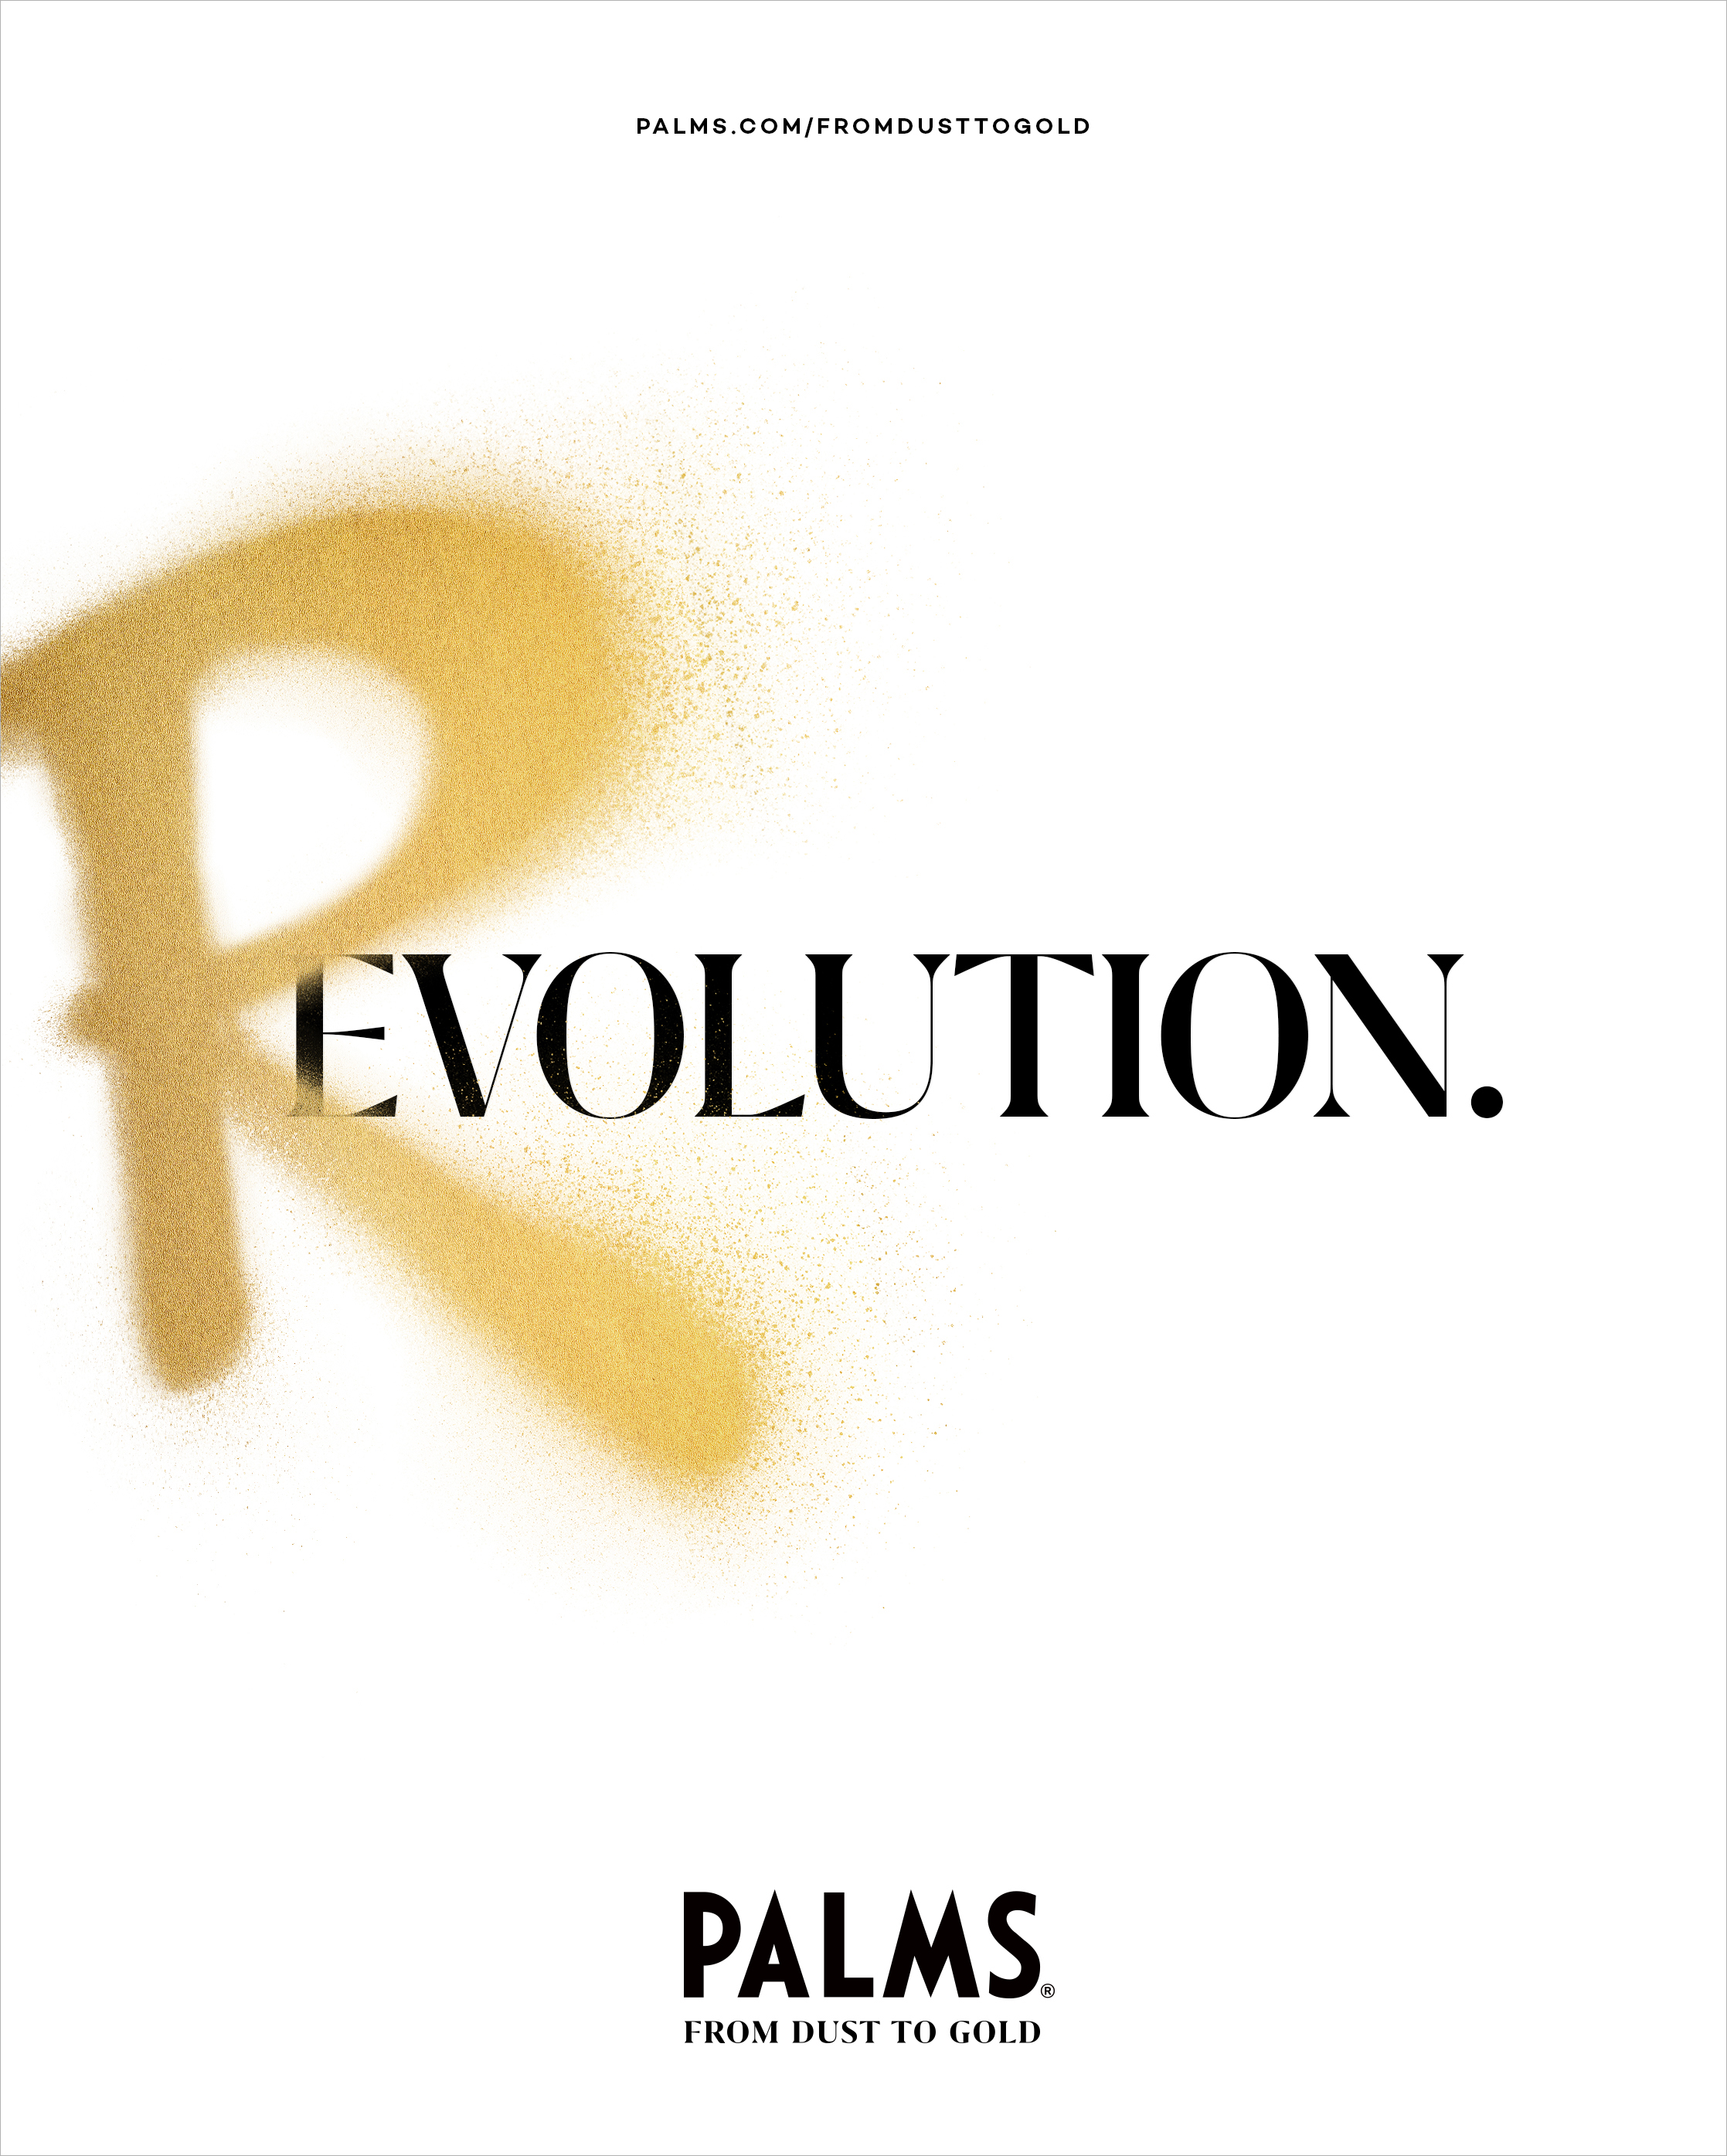 Palms-Print-Revolution copy.jpg